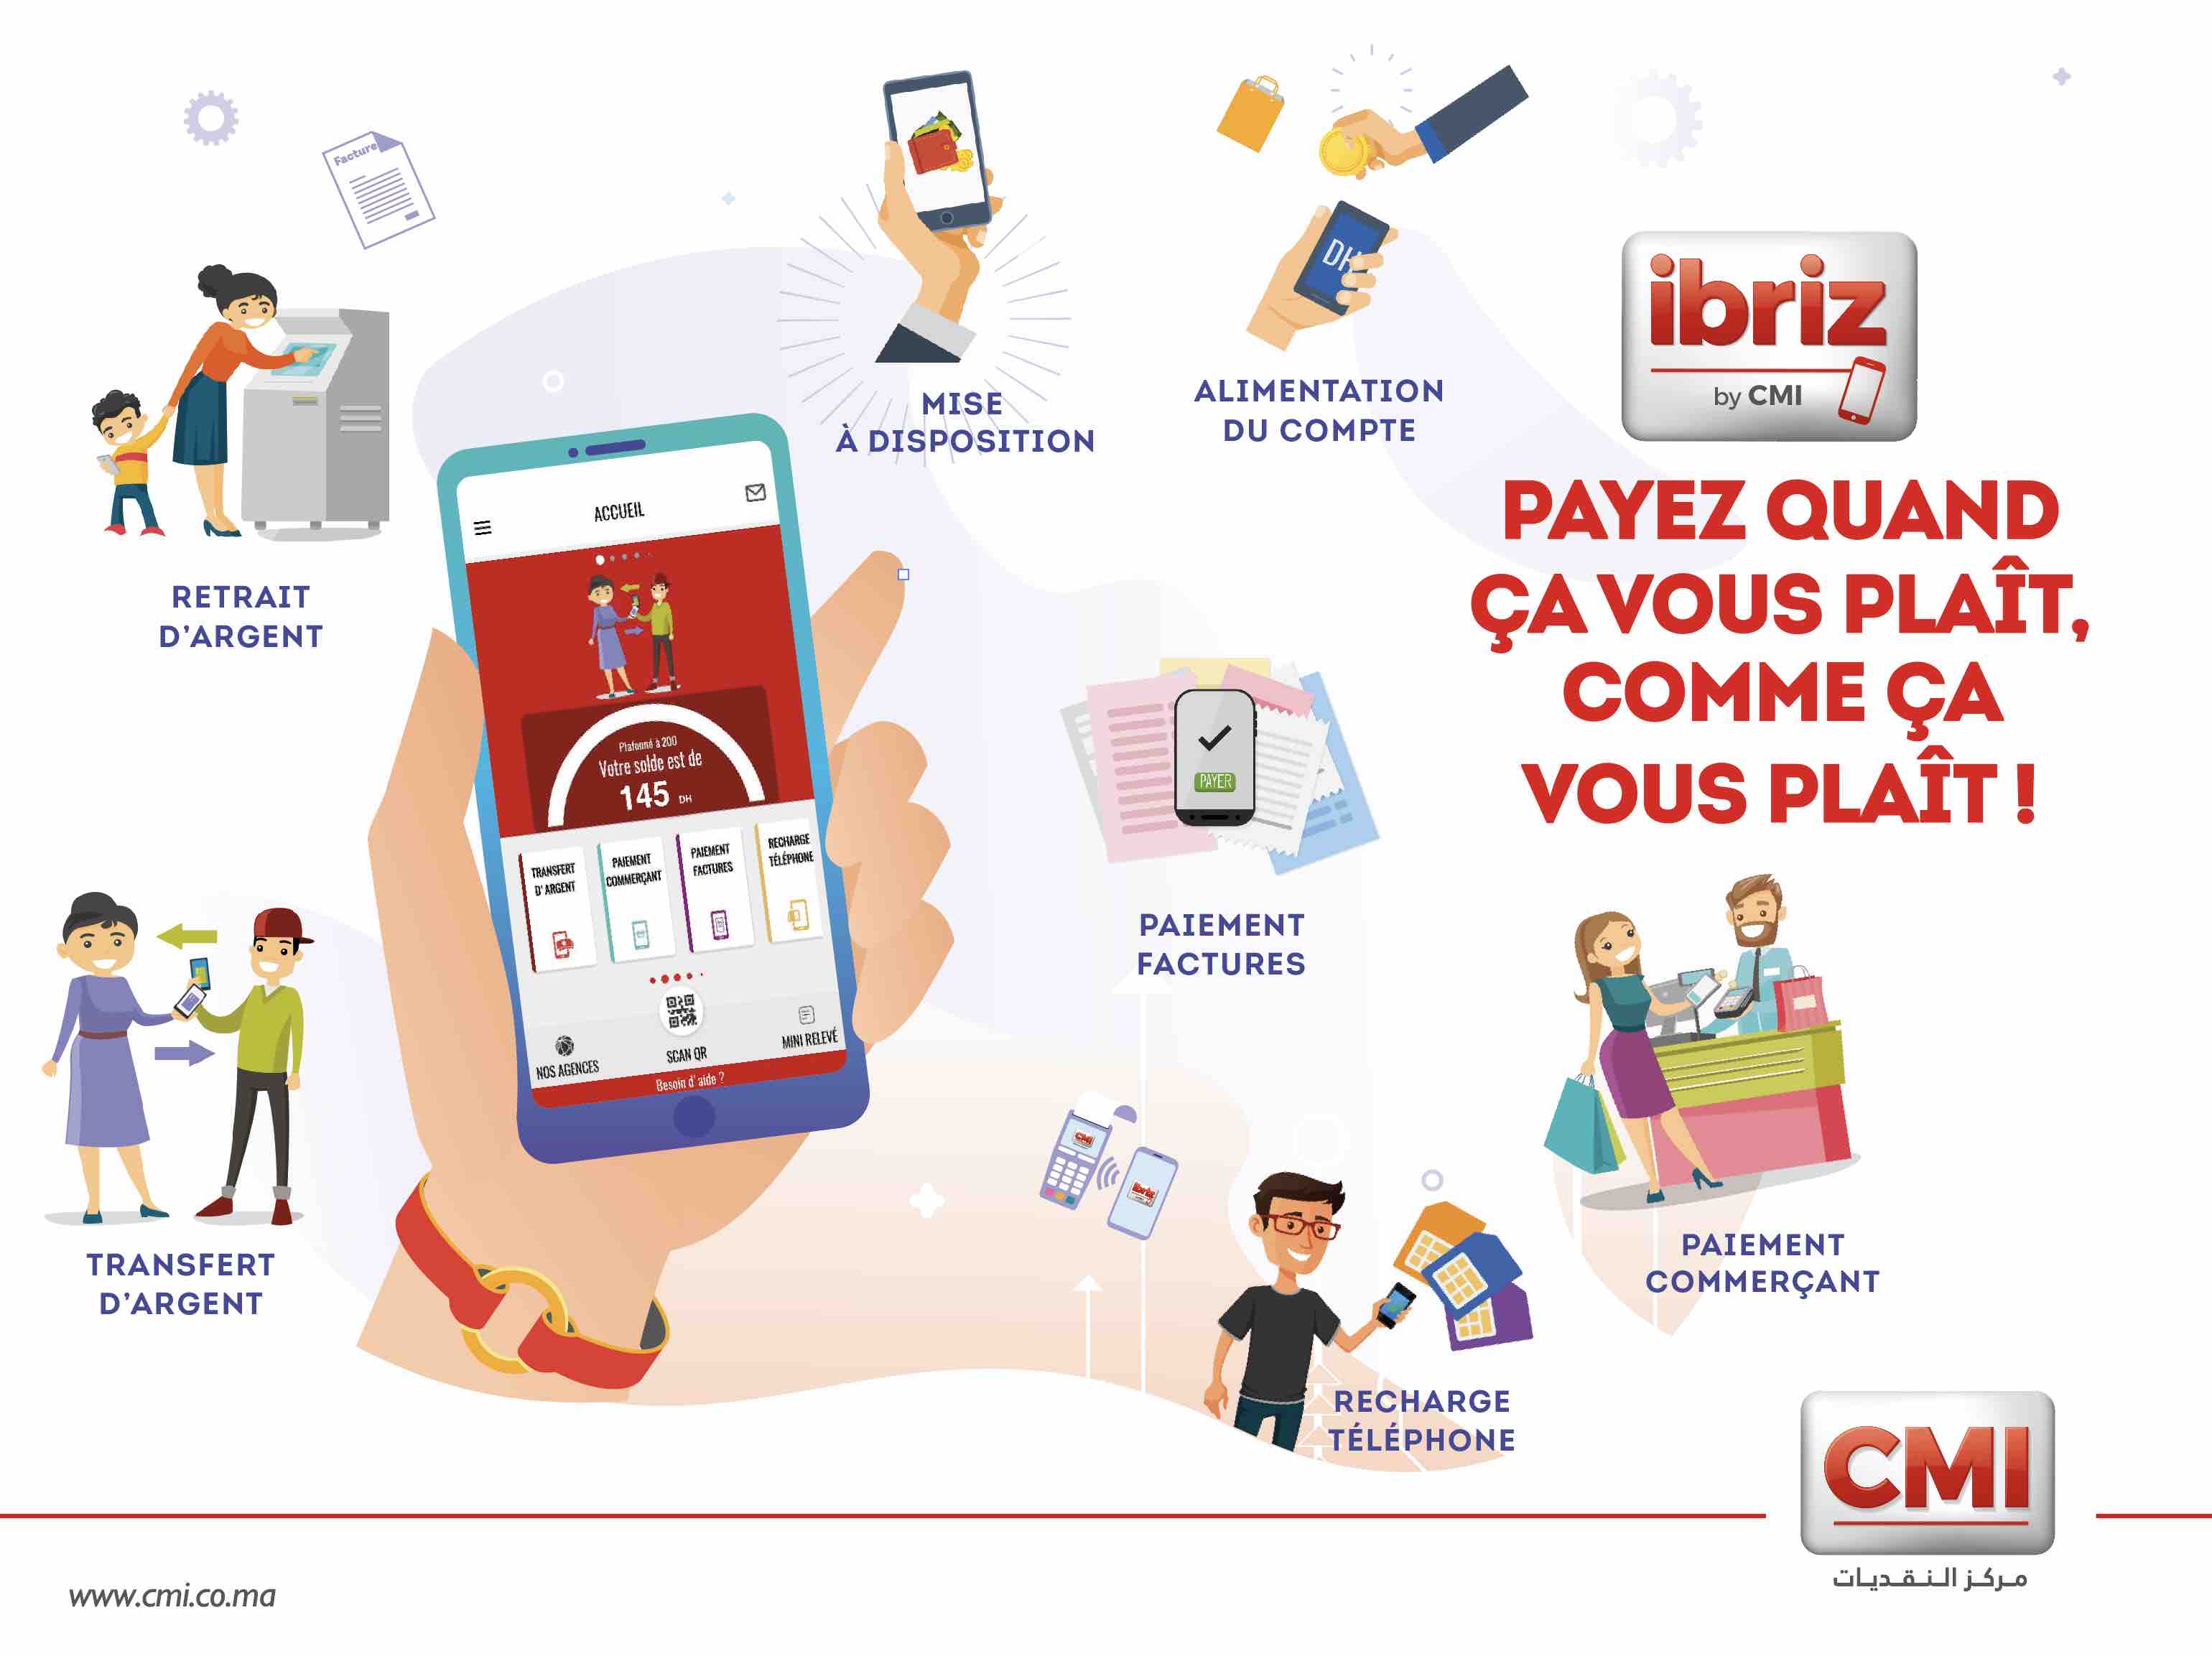 Le CMI lance sa nouvelle solution de paiement mobile «ibriz by CMI»